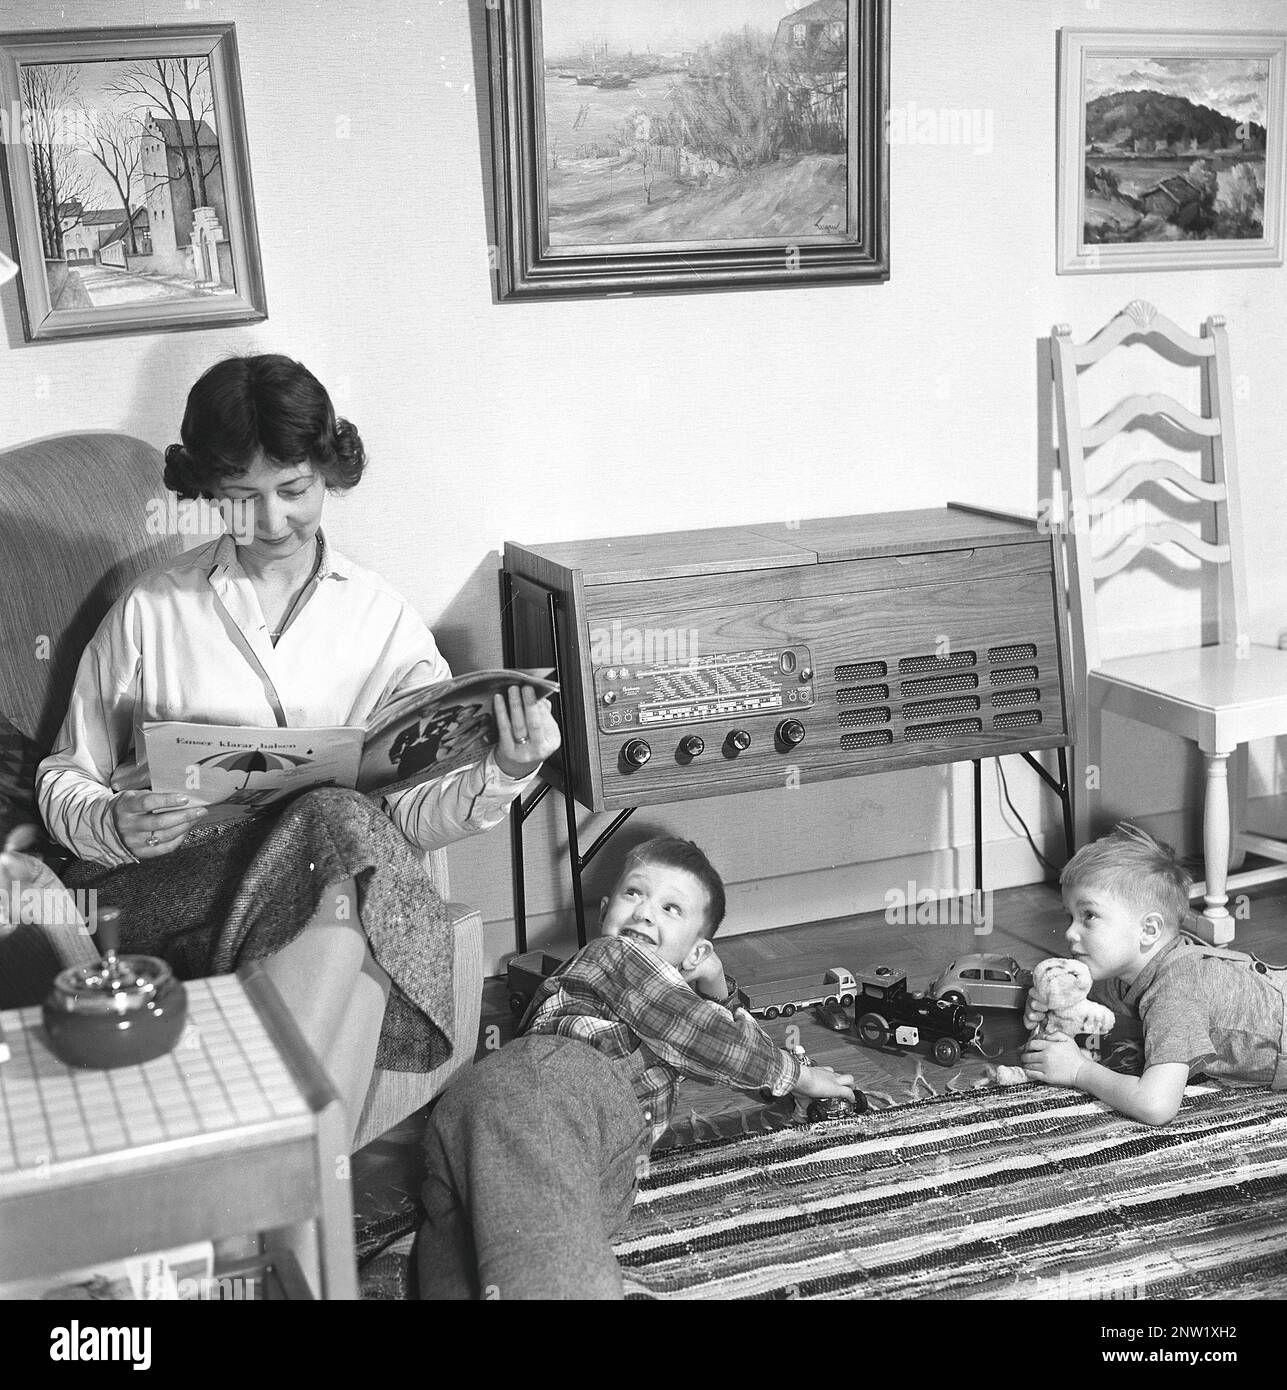 Une femme au foyer et une mère avec ses deux garçons devant la radio. Gramophone radio typique de 1957. Un gramophone radio qui a donné l'occasion d'écouter la radio et de lire des enregistrements gramophones dans la même unité. Suède 1957. Réf. BV19-12 Banque D'Images